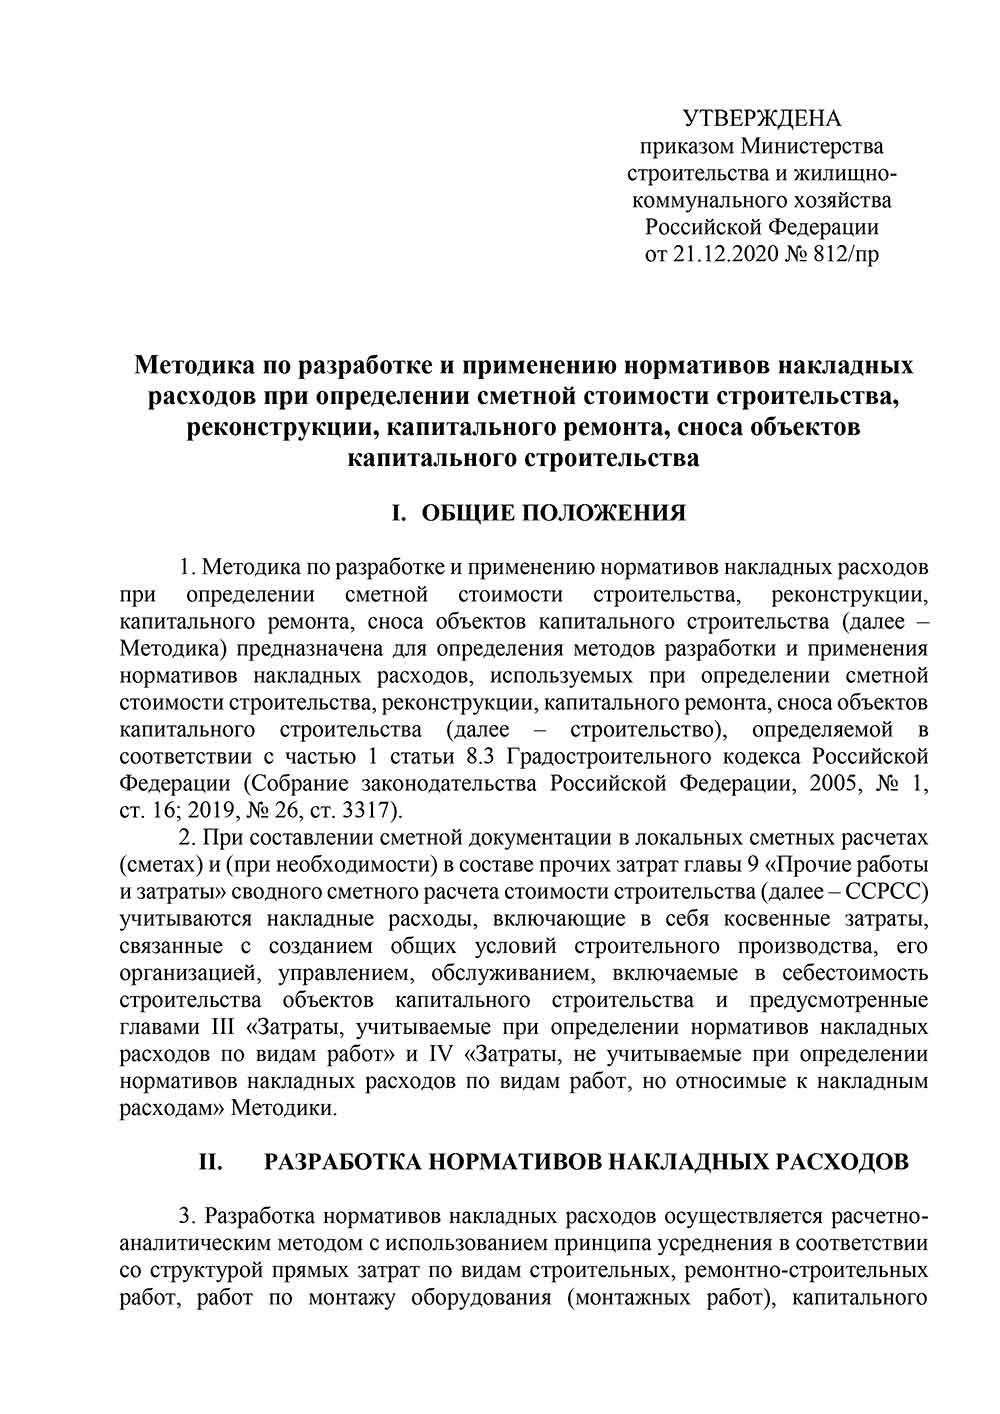 Методика по разработке и применению нормативов накладных расходов (от 21.12.2020 №821/пр)